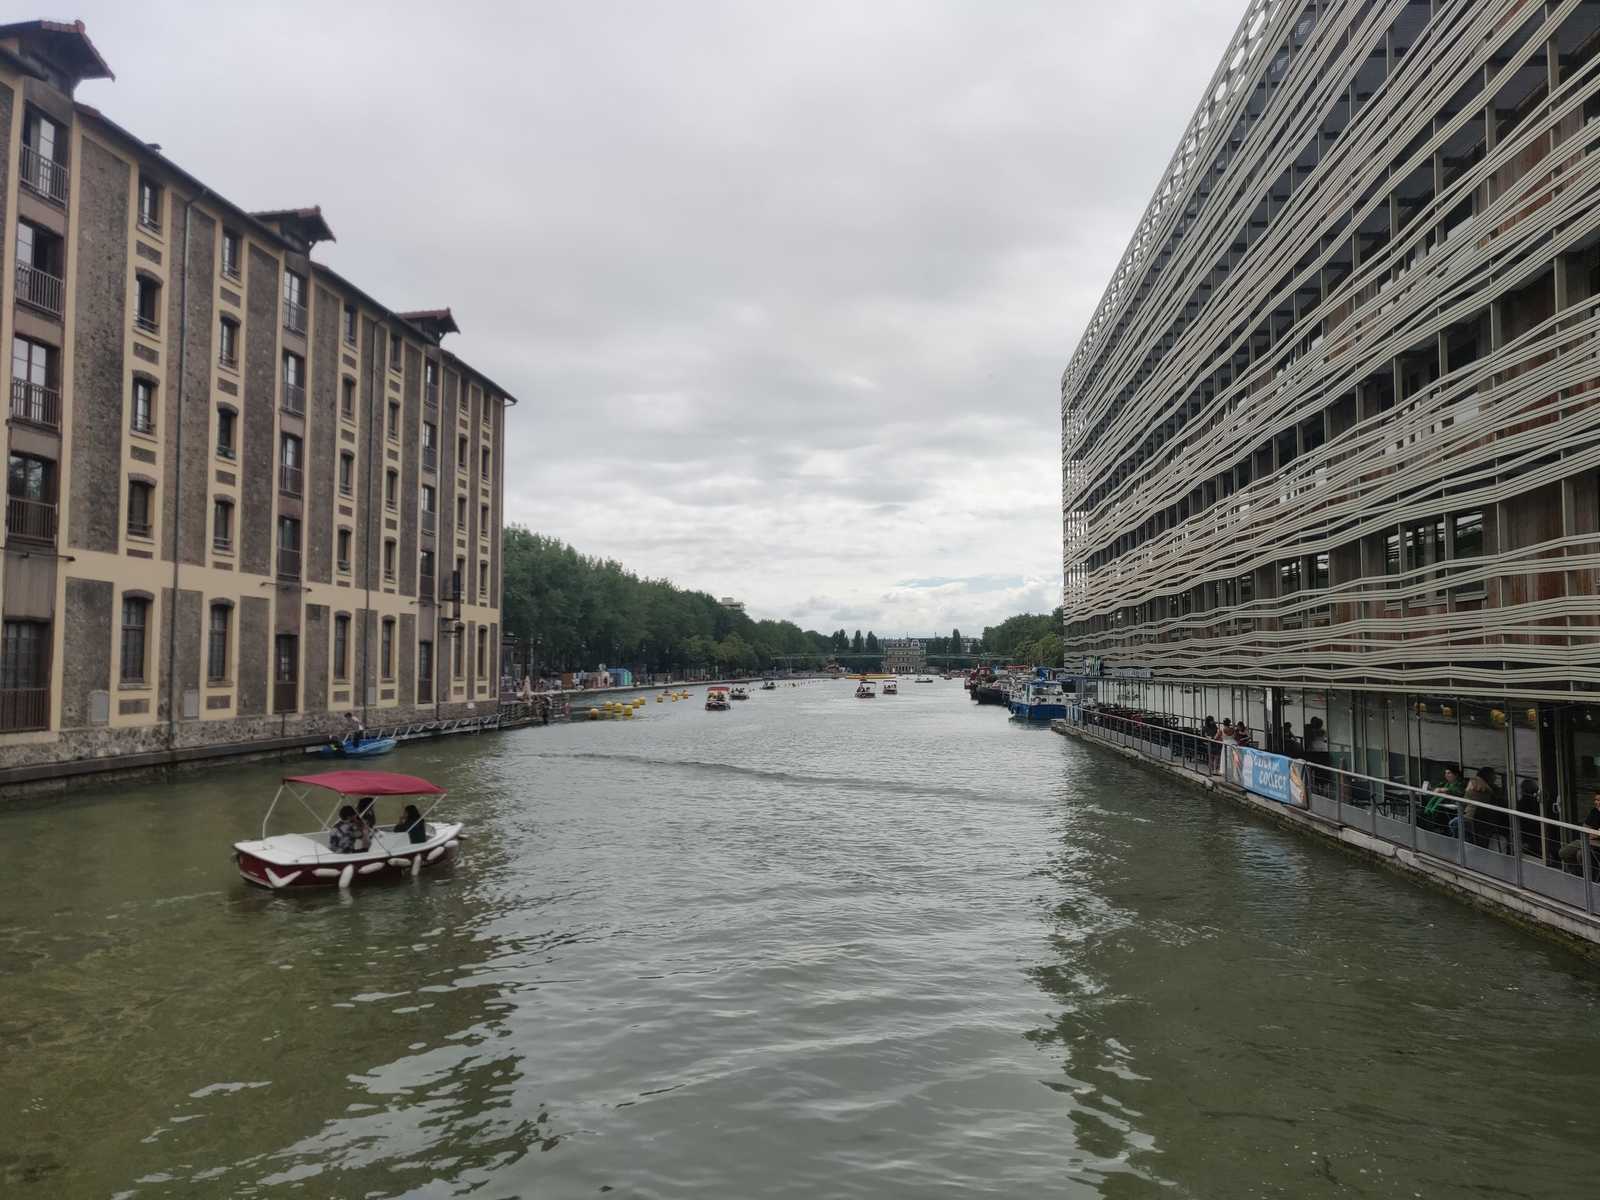 Blick auf den Canal de l'Ourcq in Paris, Urbanismus, grünes Wasser, Touristenboote auf dem Gewässer, Stadt und Mensch, bateau de plaisance, hostel ourcq, metropole, reisende der städte, städtereisen,